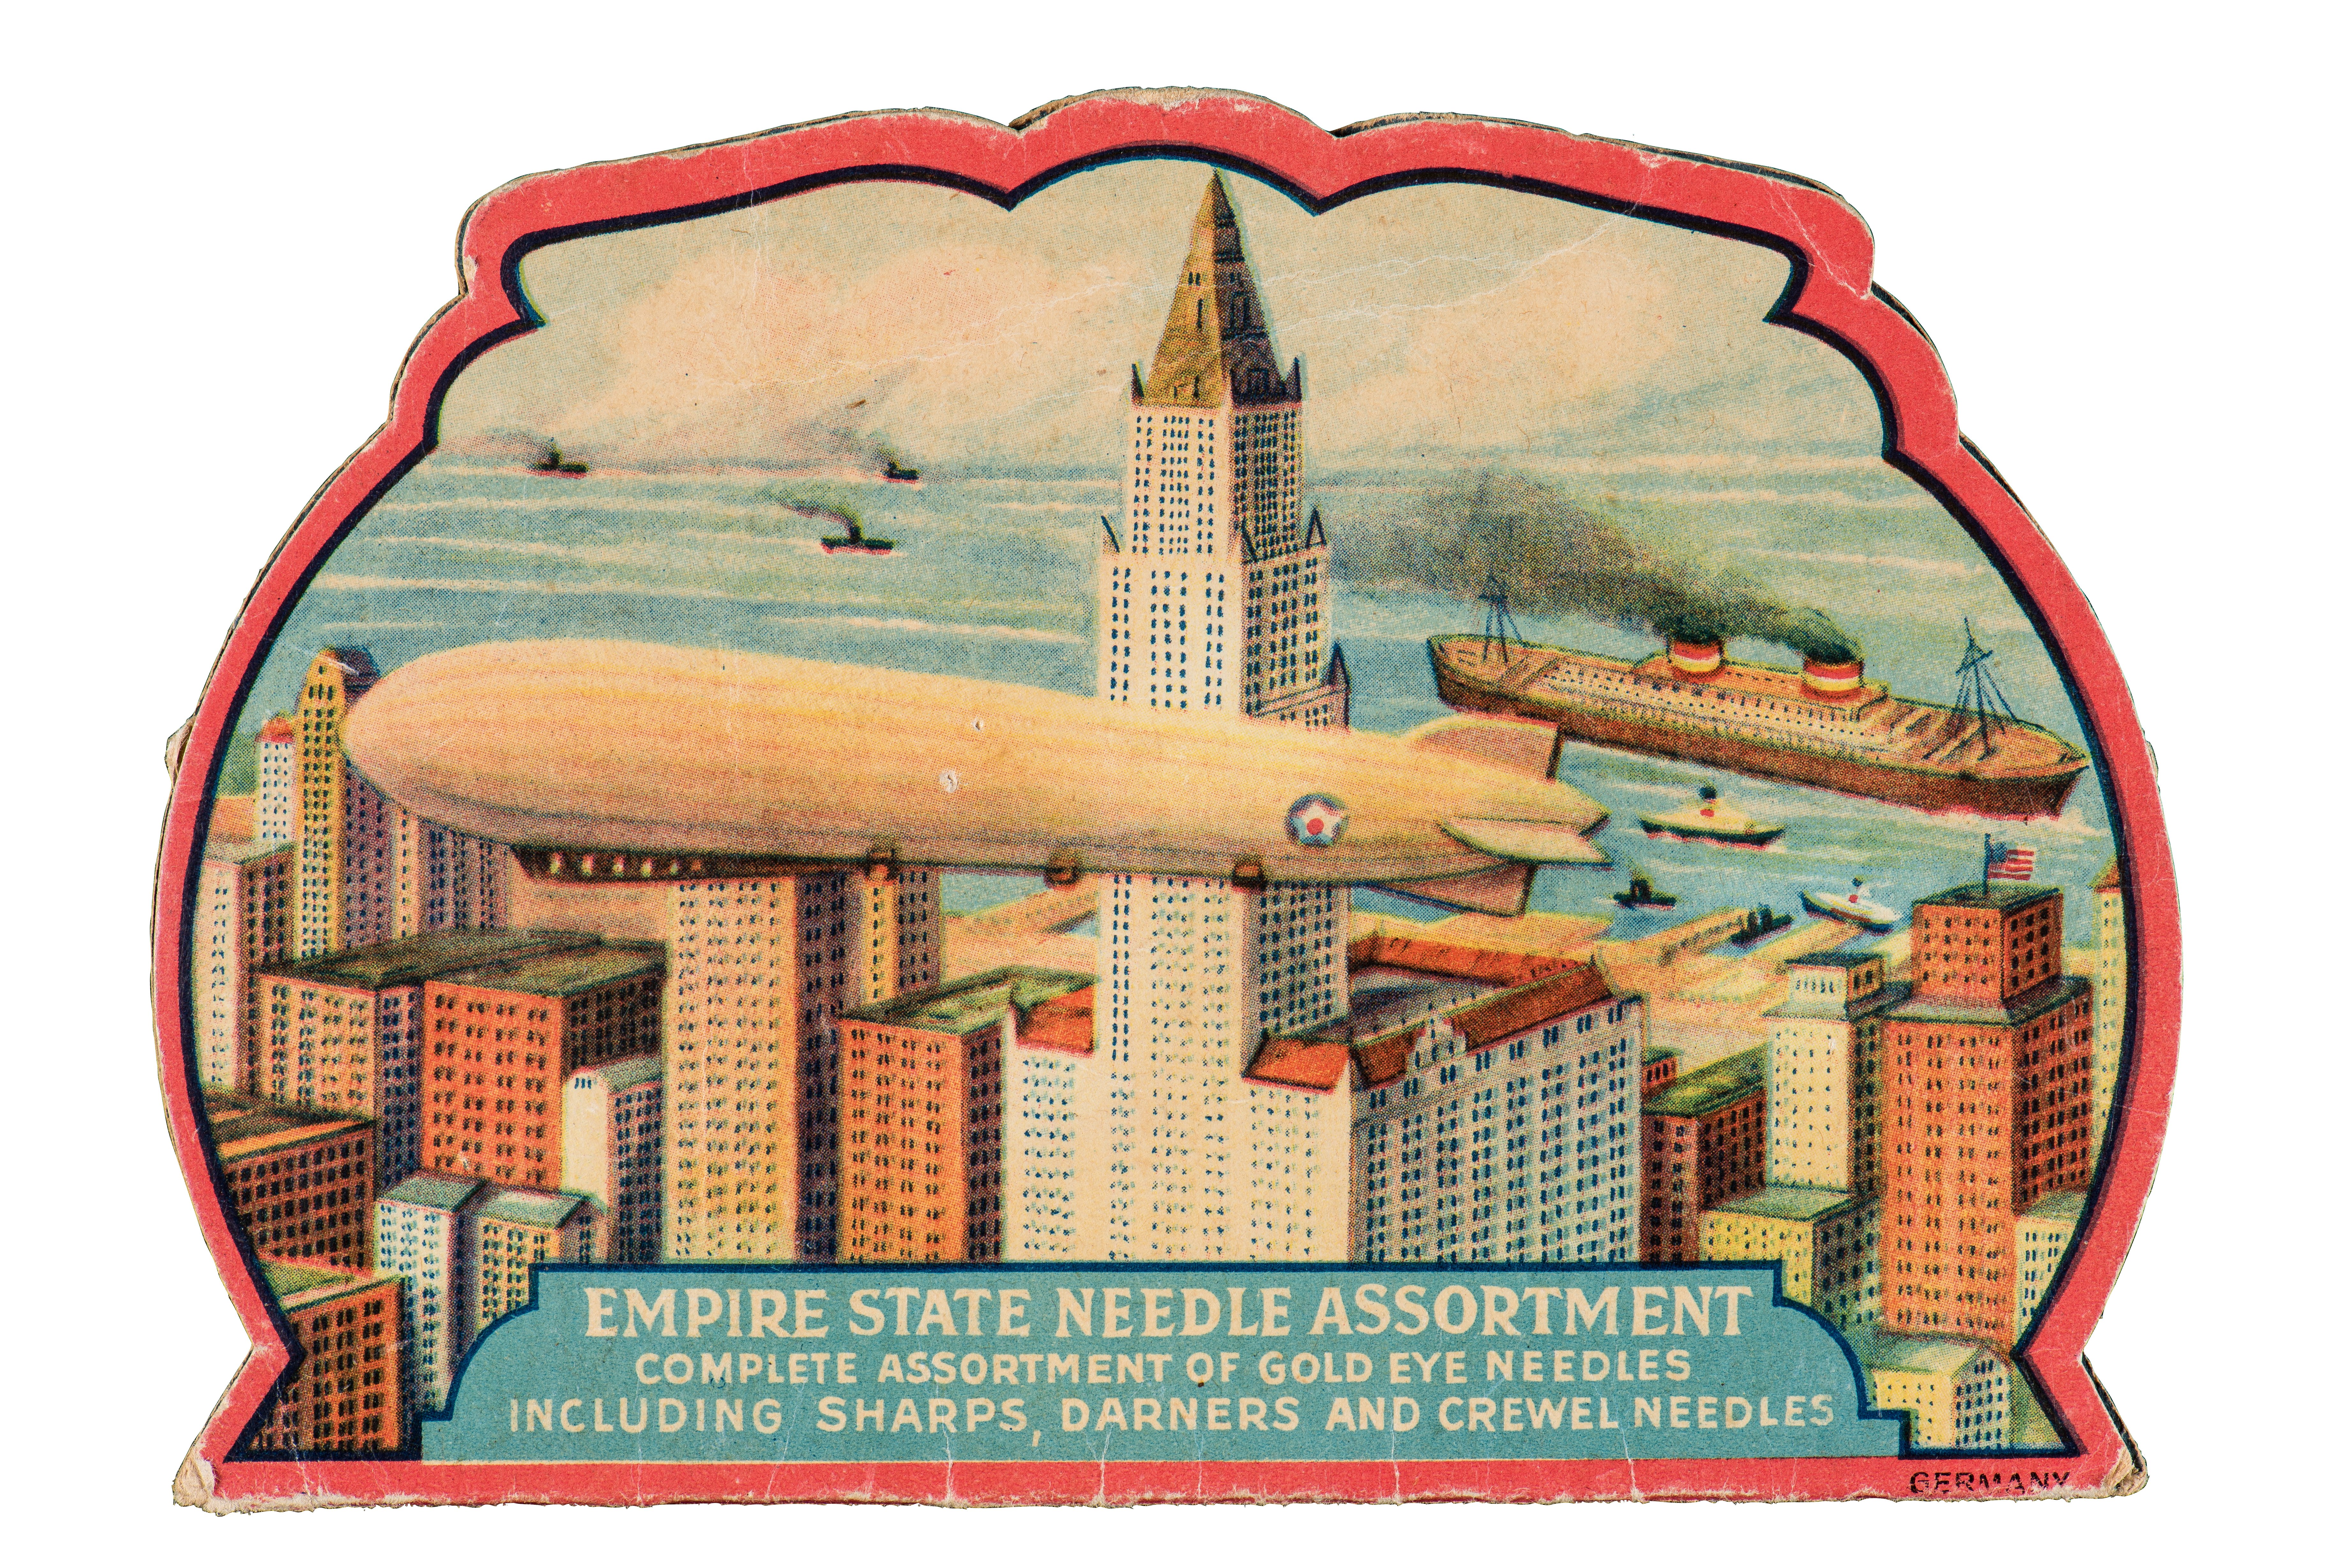 Nadelheft mit Motiv des Luftschiffs vor dem Empire State Building (Zeppelin Museum Friedrichshafen GmbH CC BY-NC-SA)